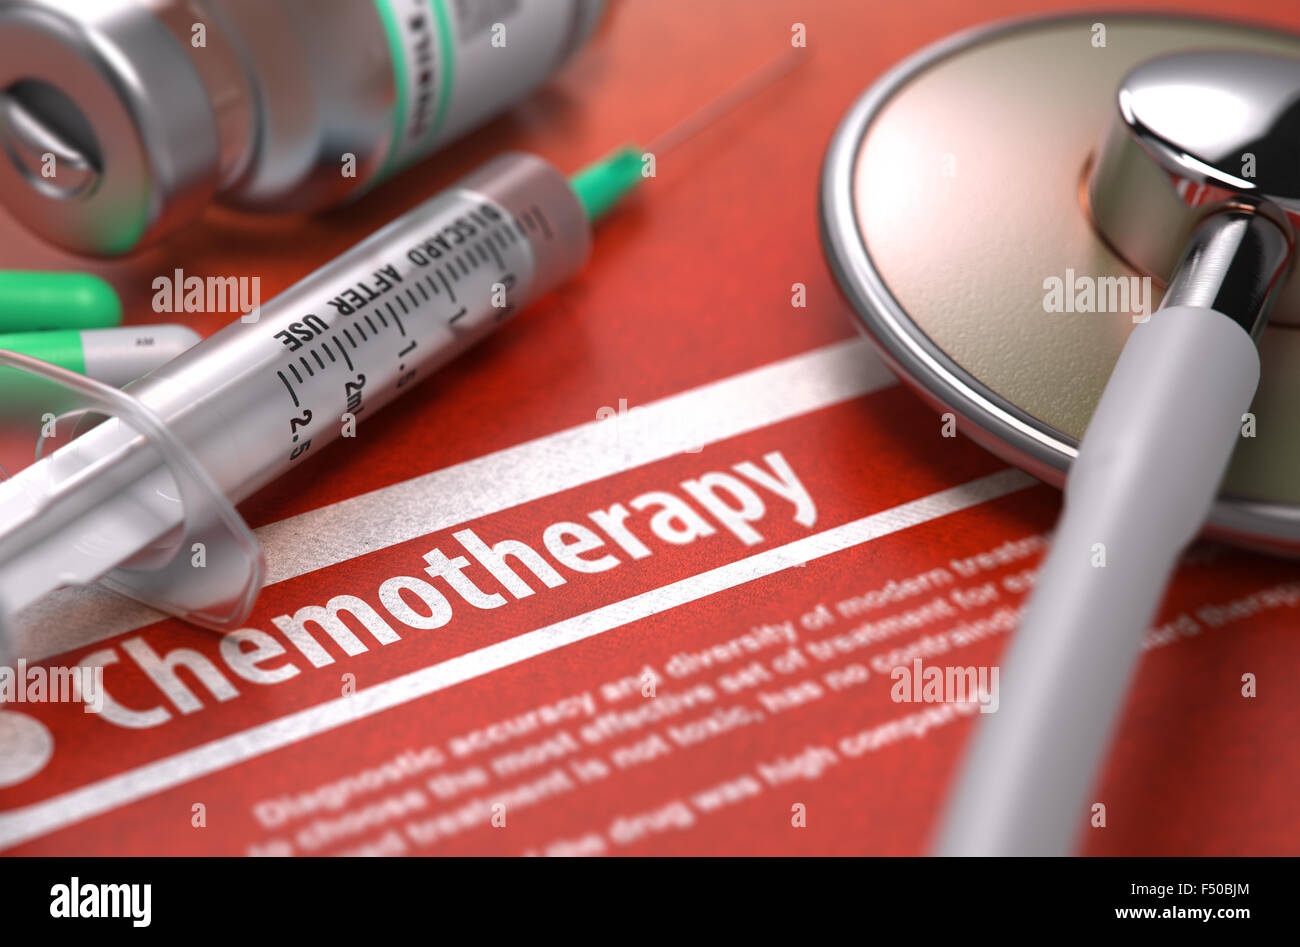 La chemioterapia. Concetto medico. Foto Stock